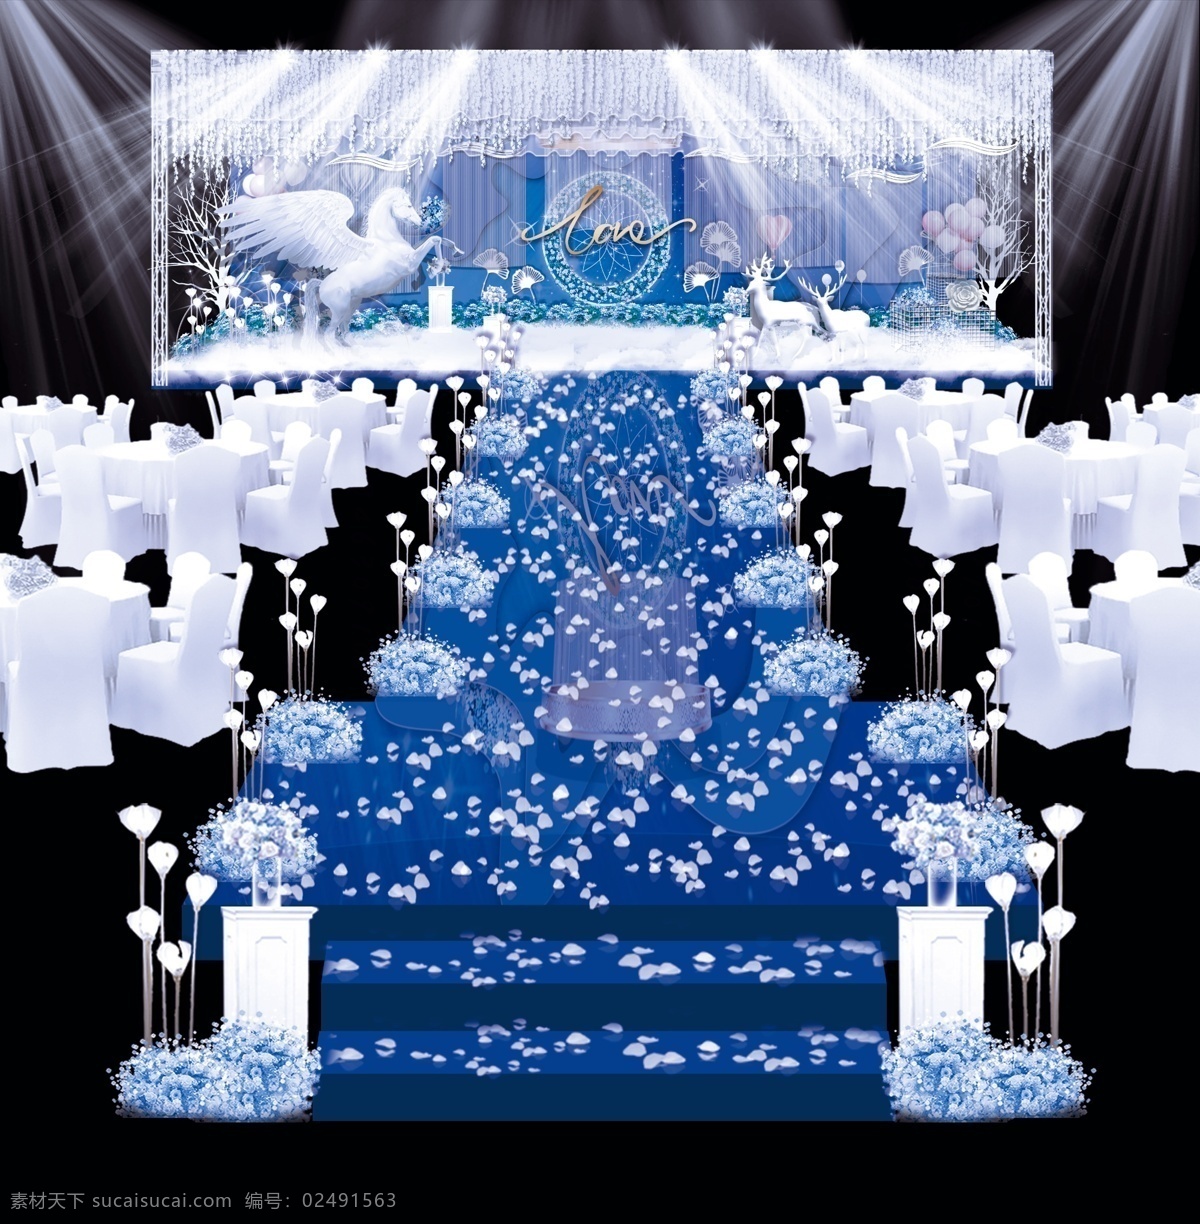 高端 婚礼 婚庆 布置 效果图 灯光 气球 高端婚礼 蓝色婚礼 飞马 鹿